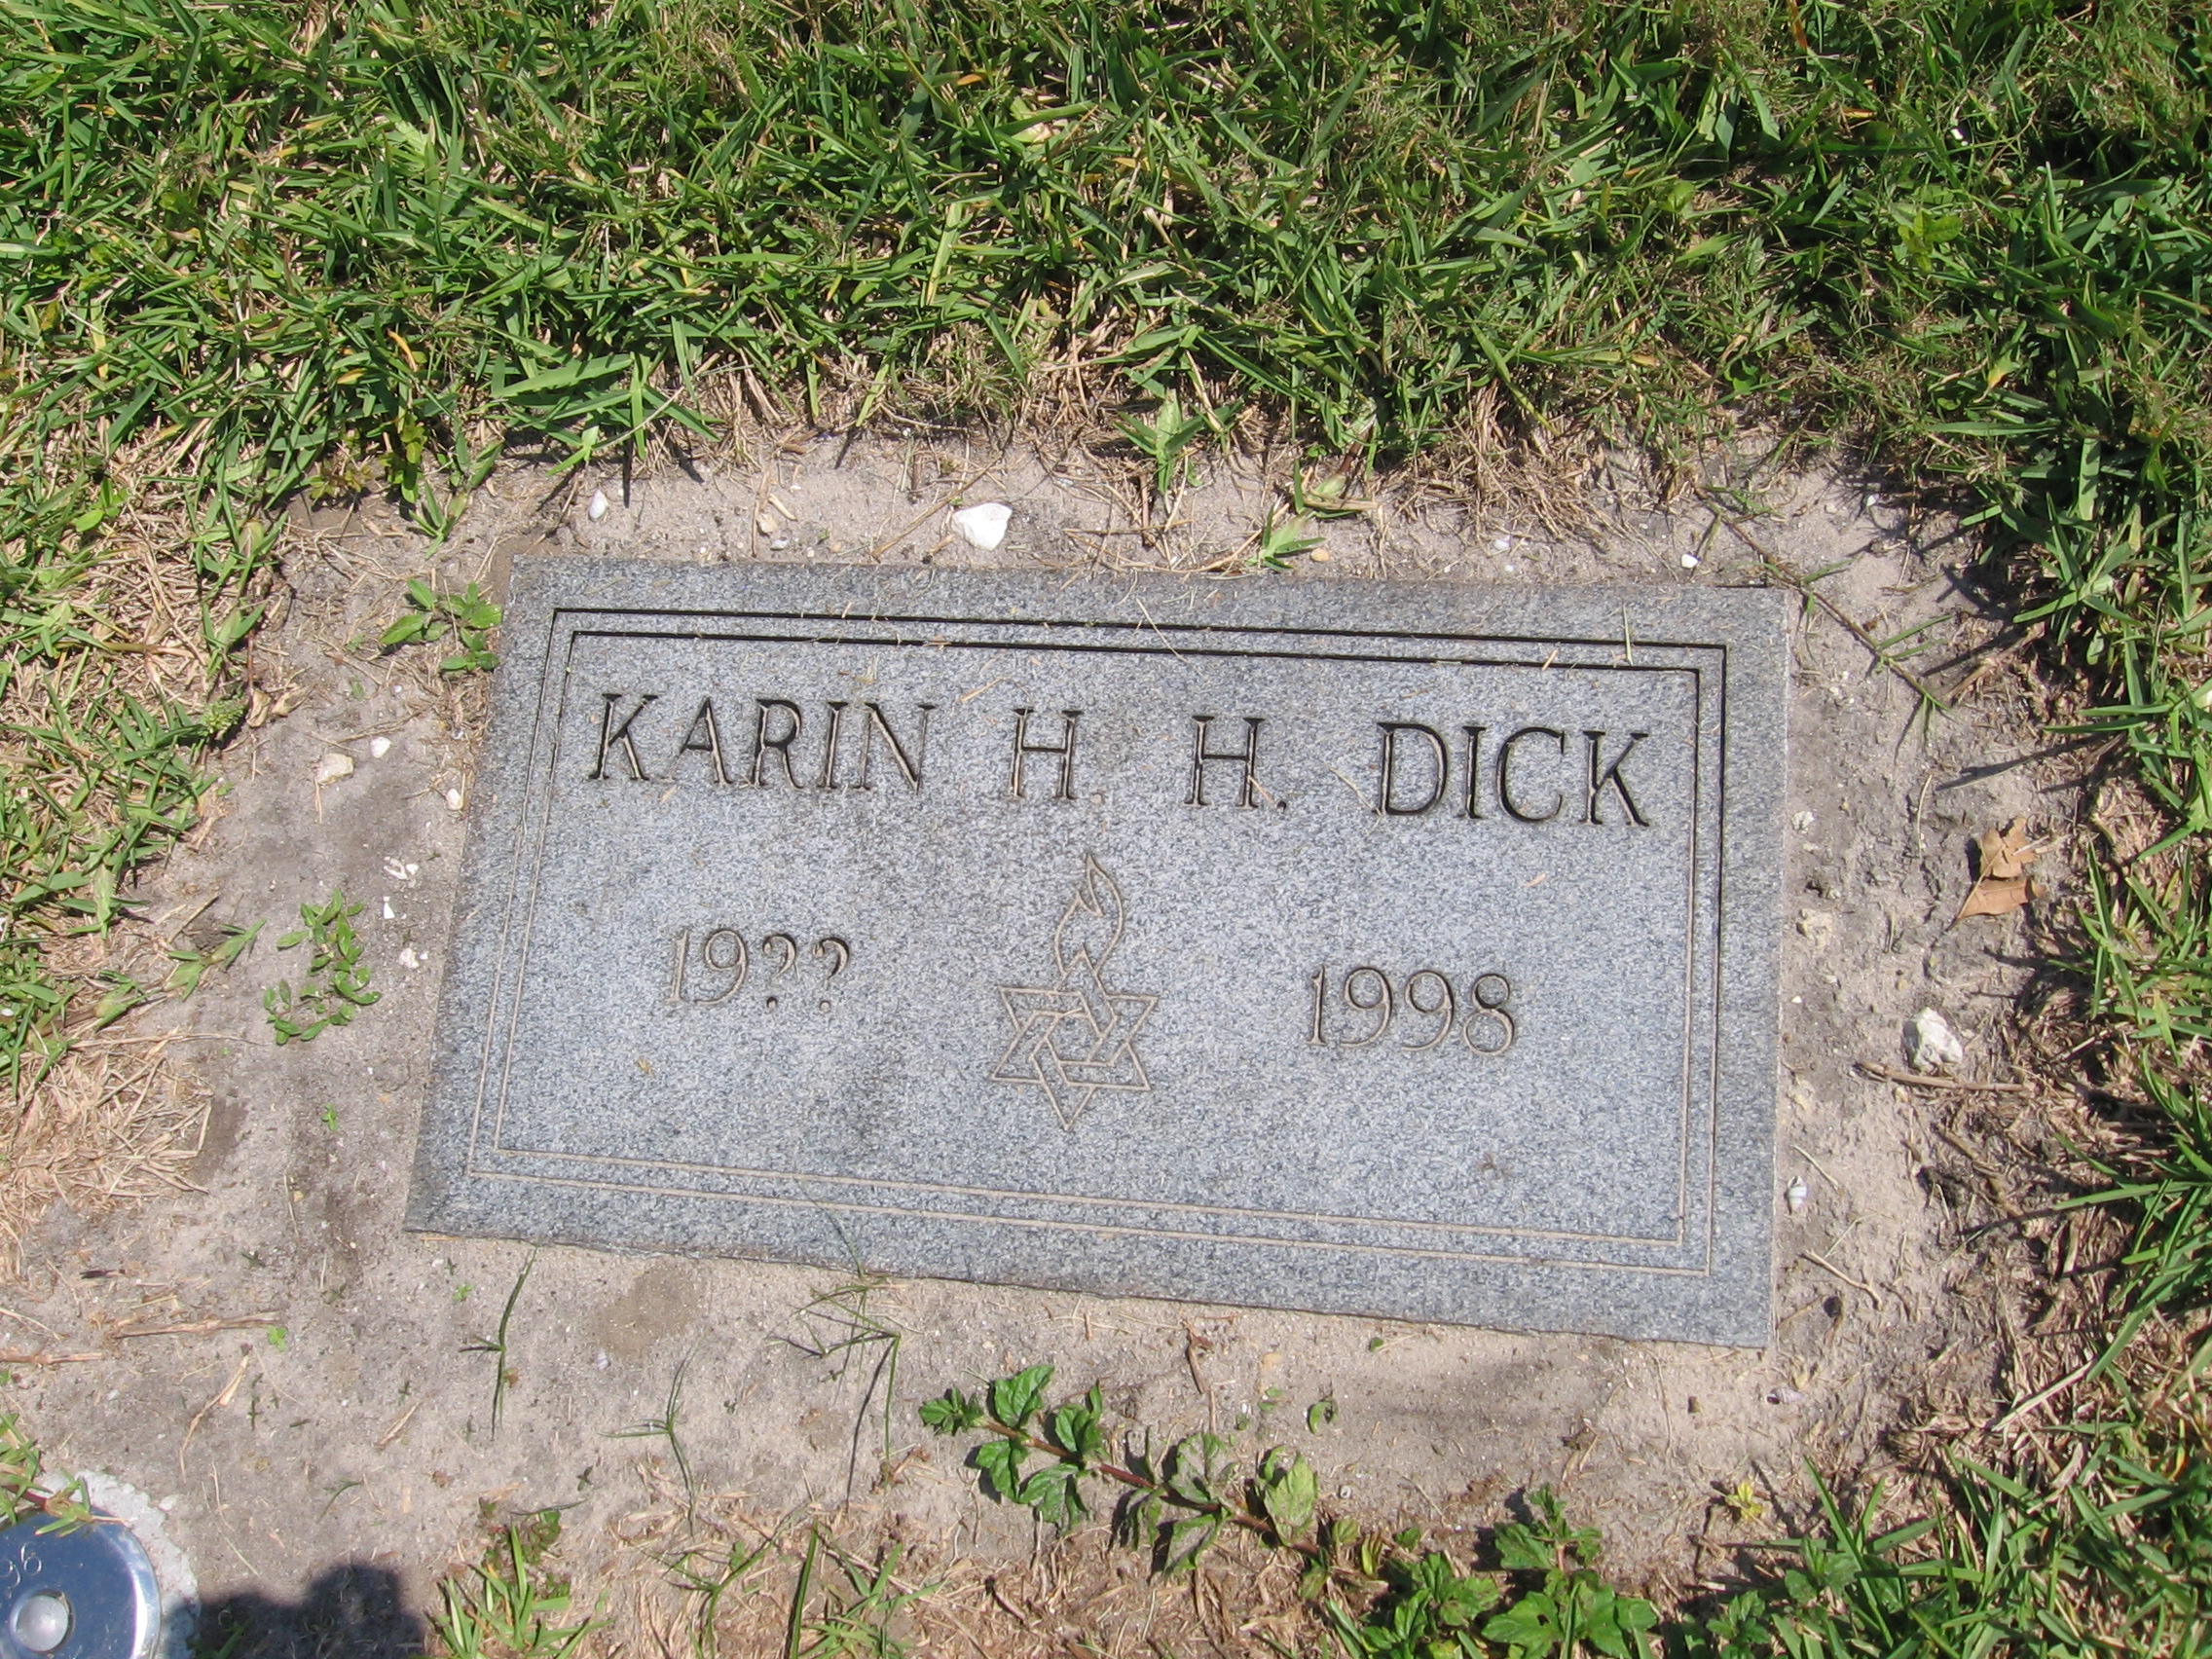 Karin H H Dick